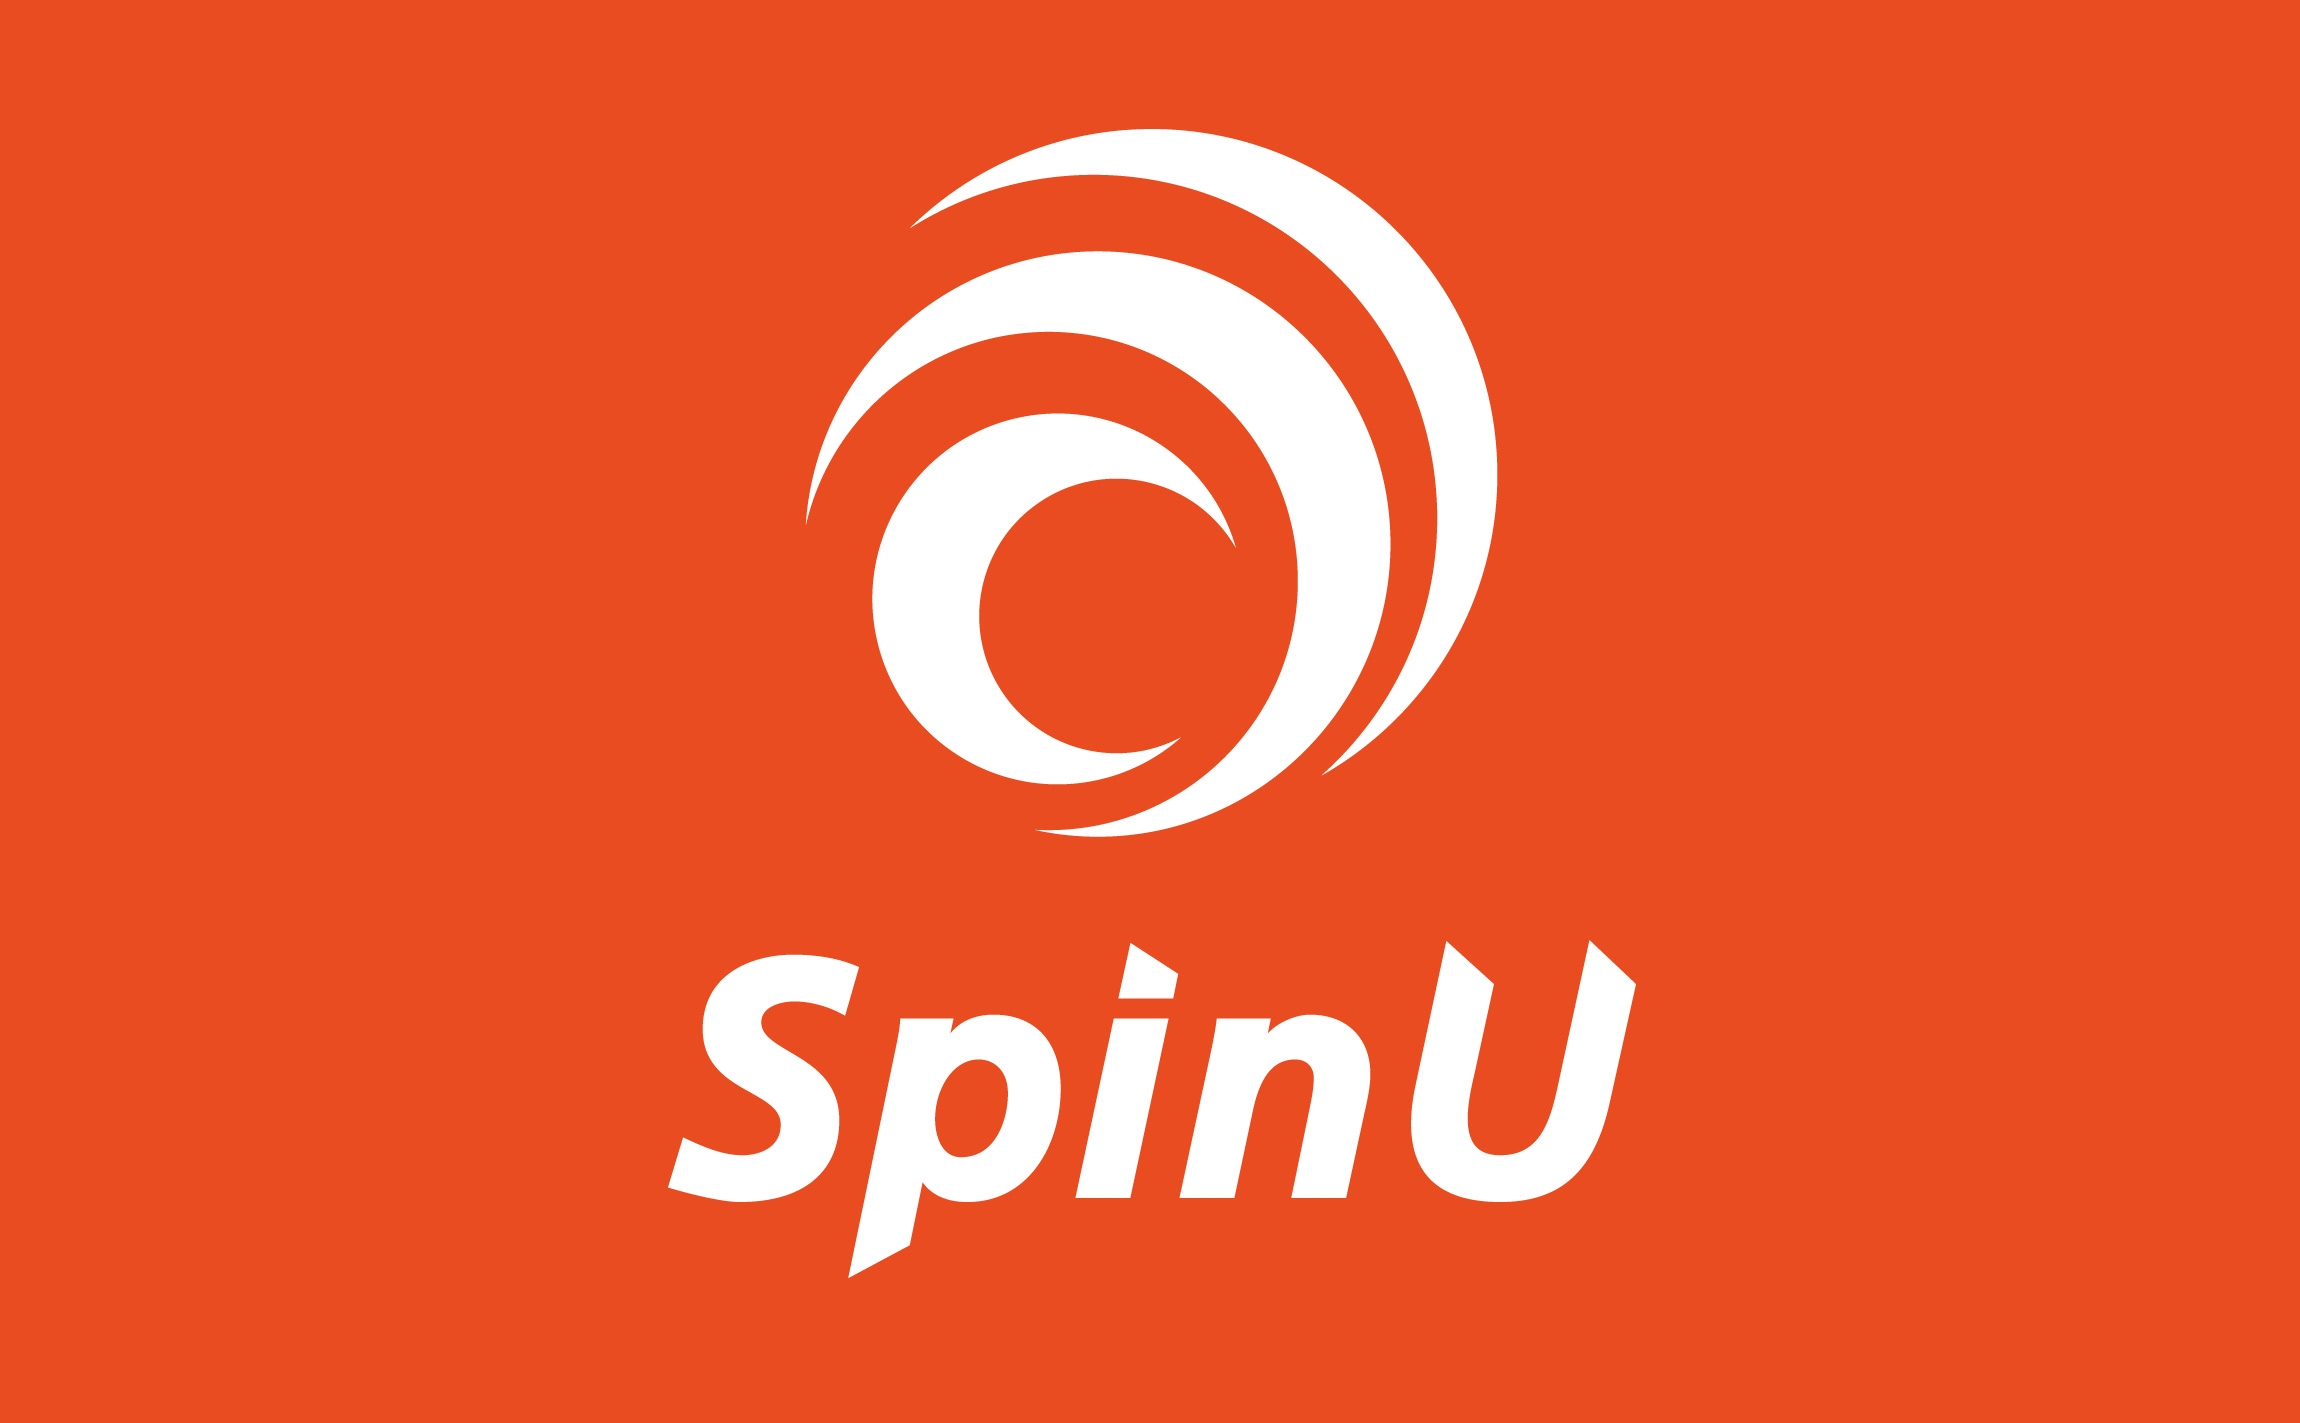 SpinU 스핀유 로고, 마크, CI, 브랜드